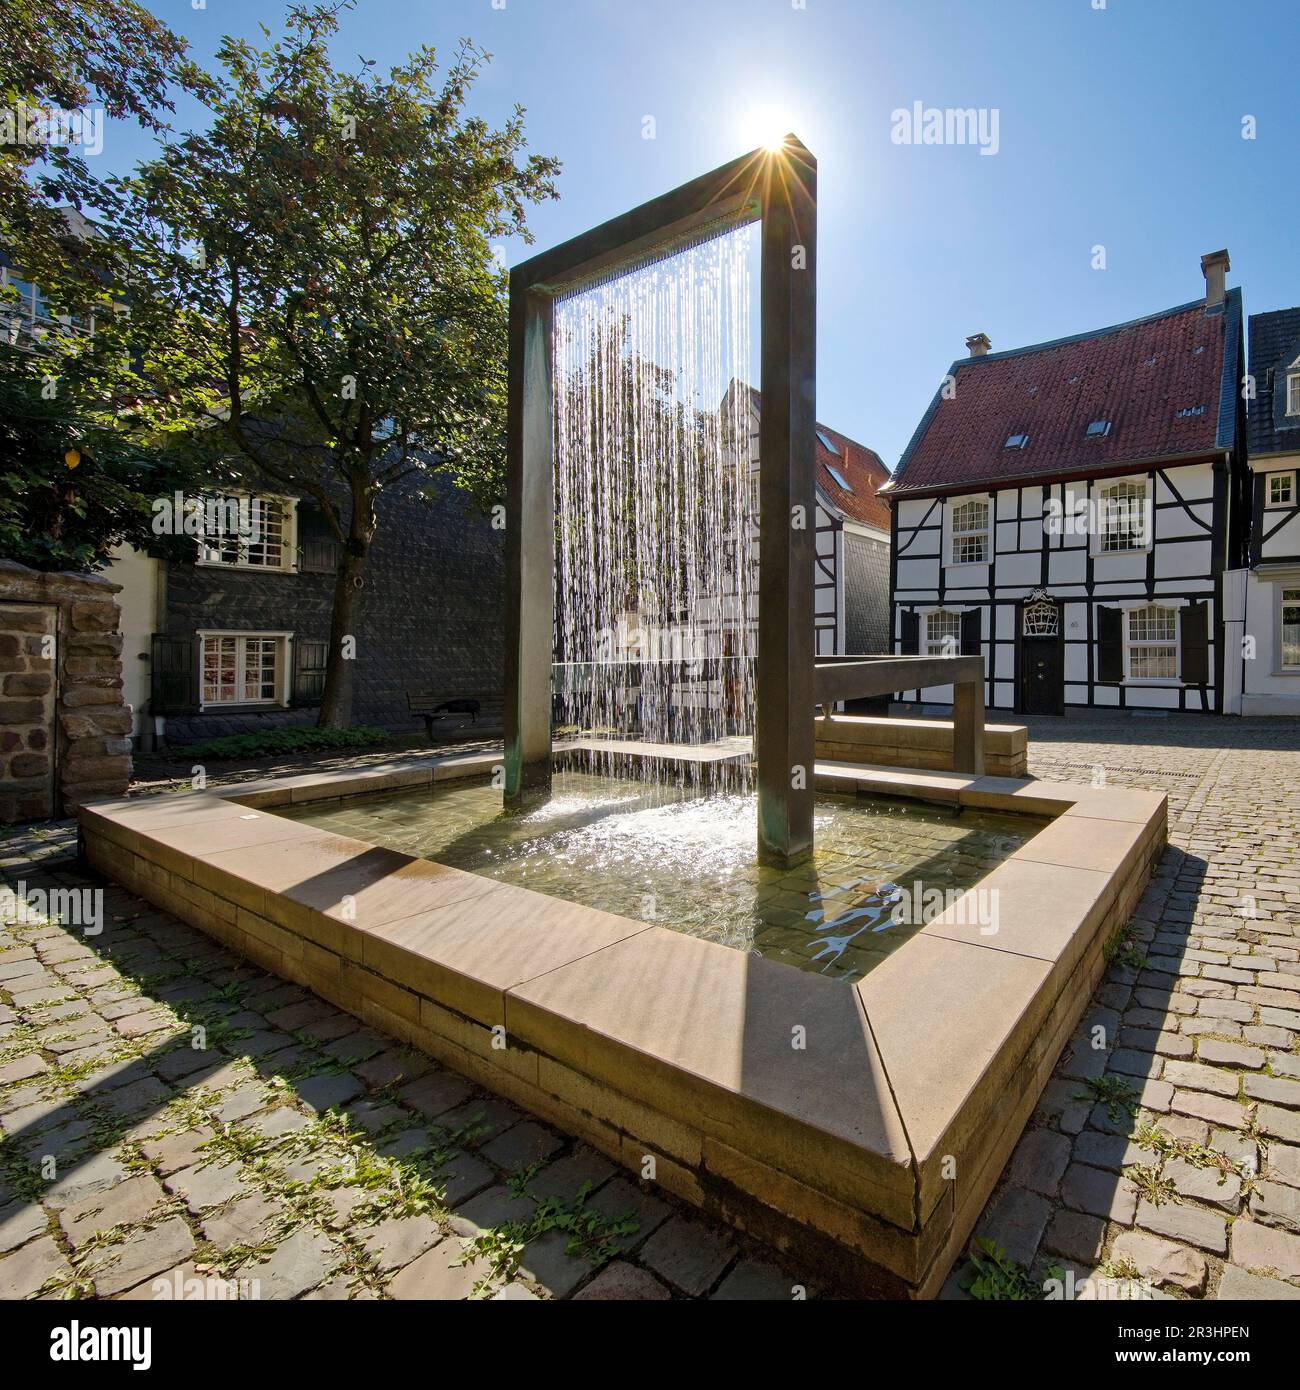 Weber fountain by Wolfgang Liesen at Tuchmacherplatz, Kettwig, Essen, Ruhr area, Germany, Europe Stock Photo